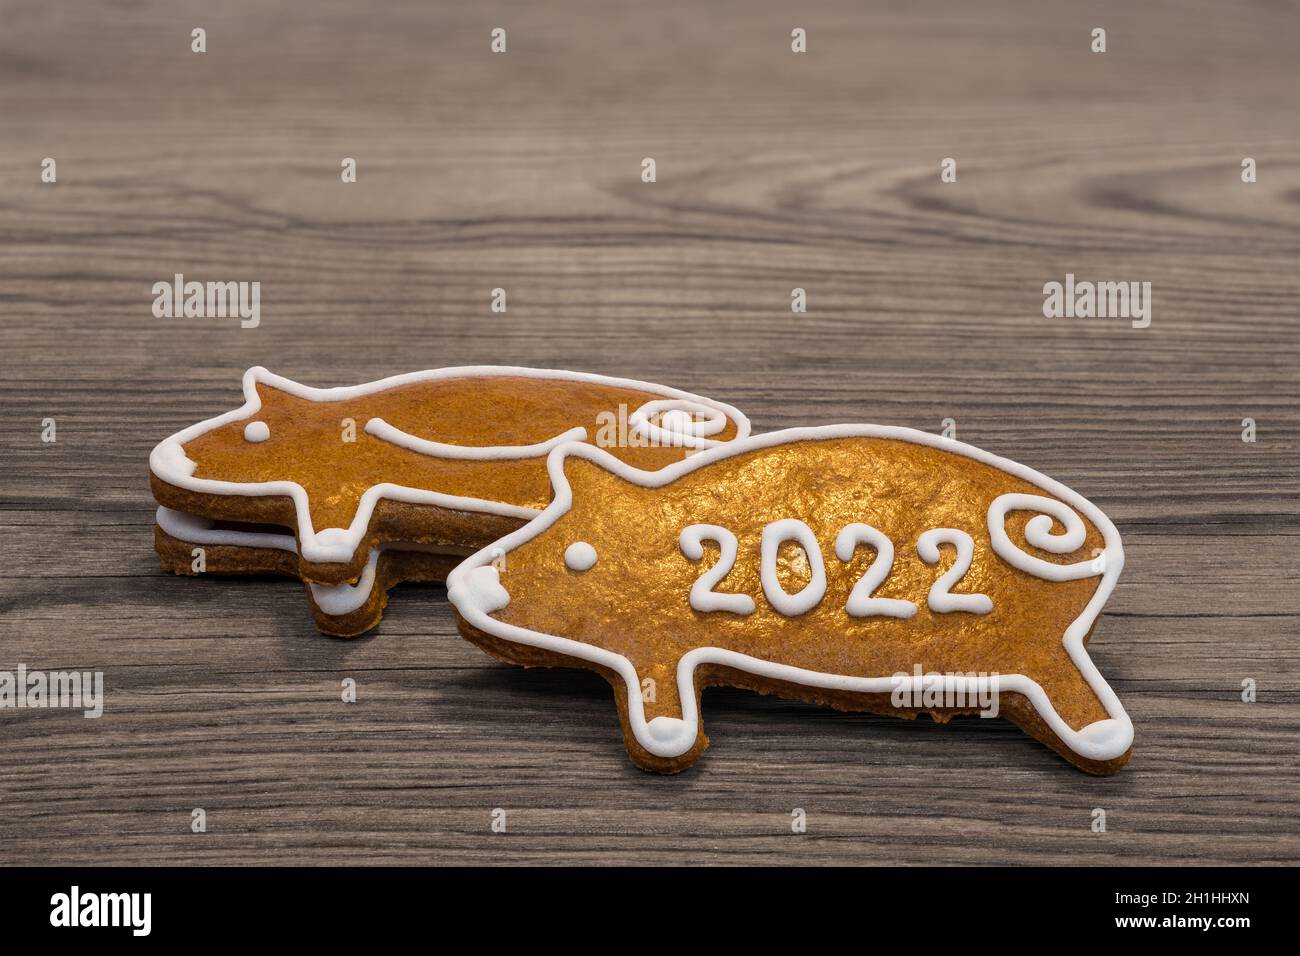 Carino maialini di pan di zenzero per felice anno nuovo 2022 accatastato su uno sfondo di legno marrone. Primo piano di biscotti ornati dorati al forno - piggies per Buona fortuna. Foto Stock